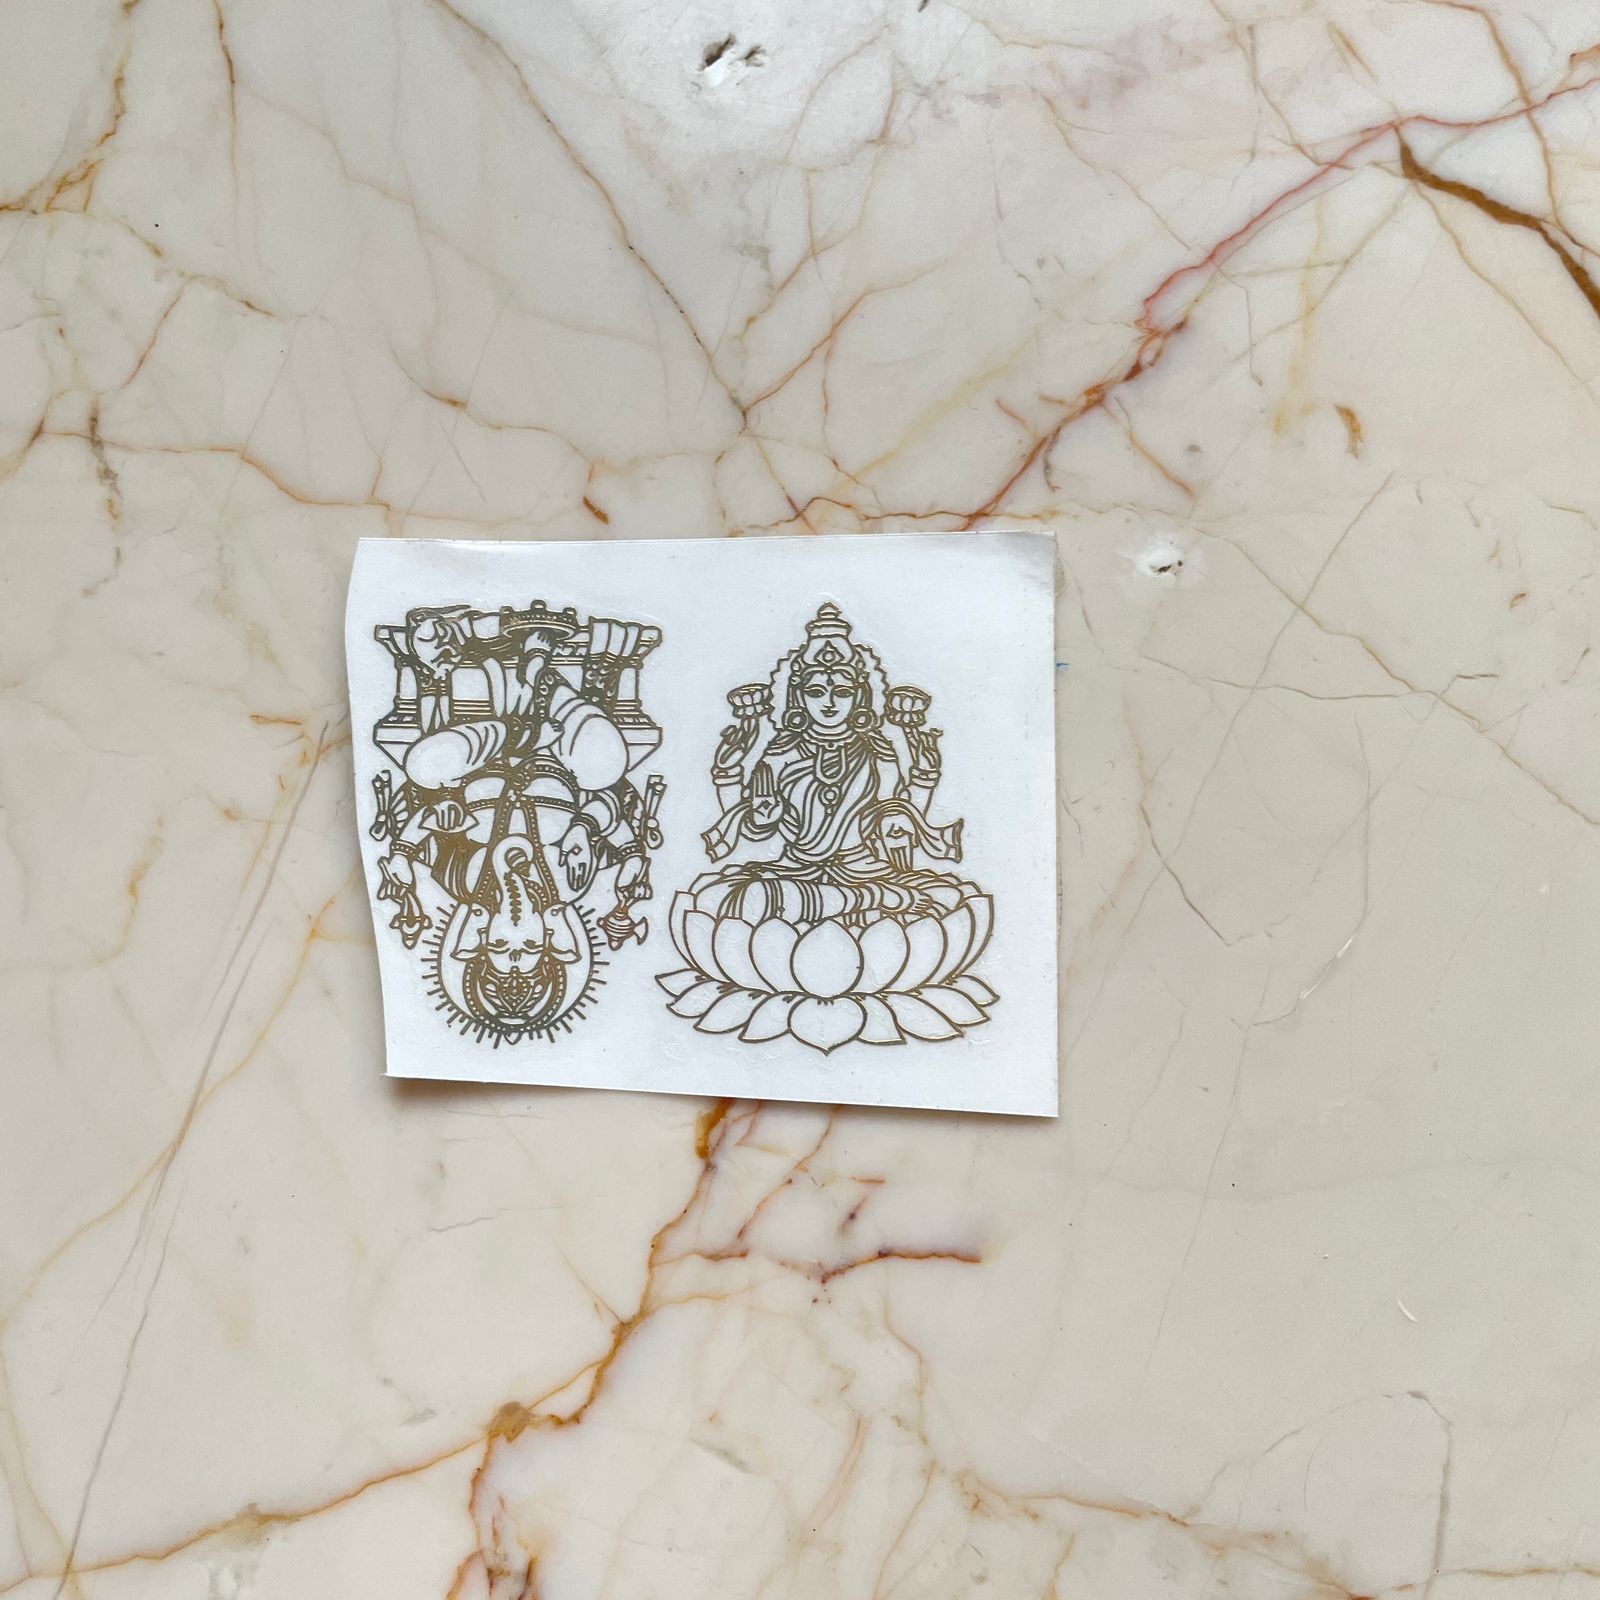 Laxmi ji & Ganesh ji  metallic sticker